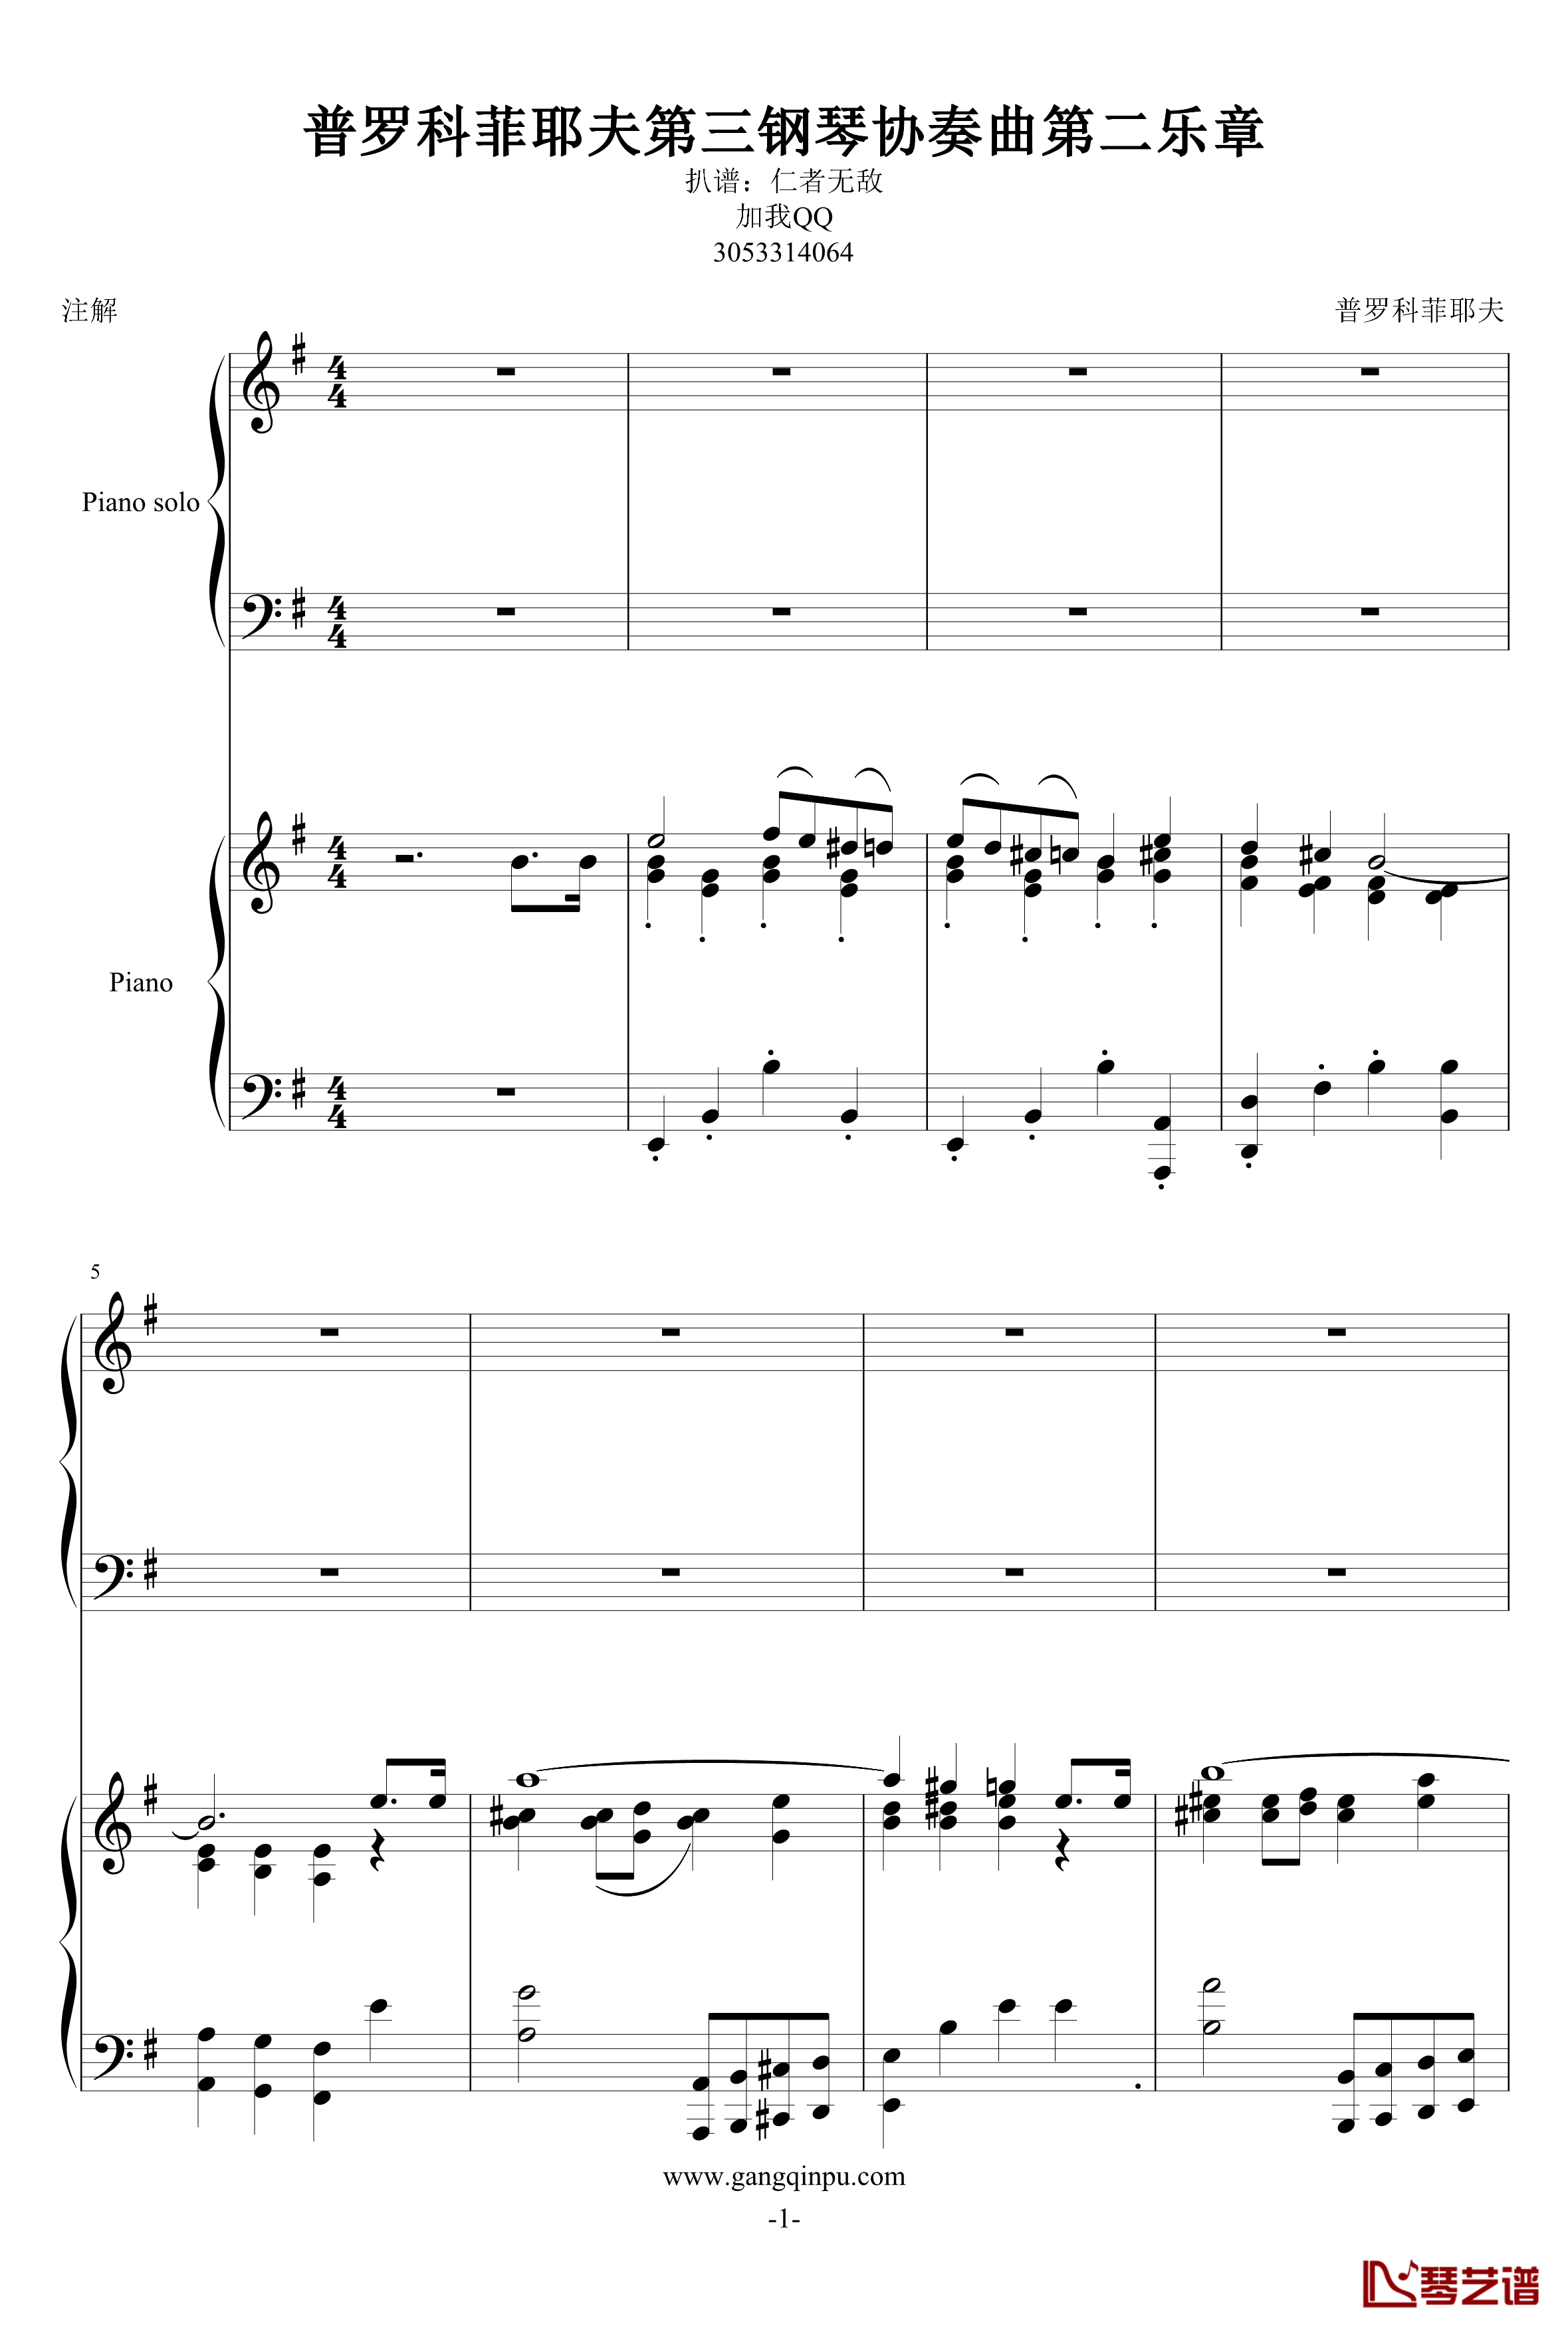 普罗科菲耶夫第三钢琴协奏曲第二乐章钢琴谱1